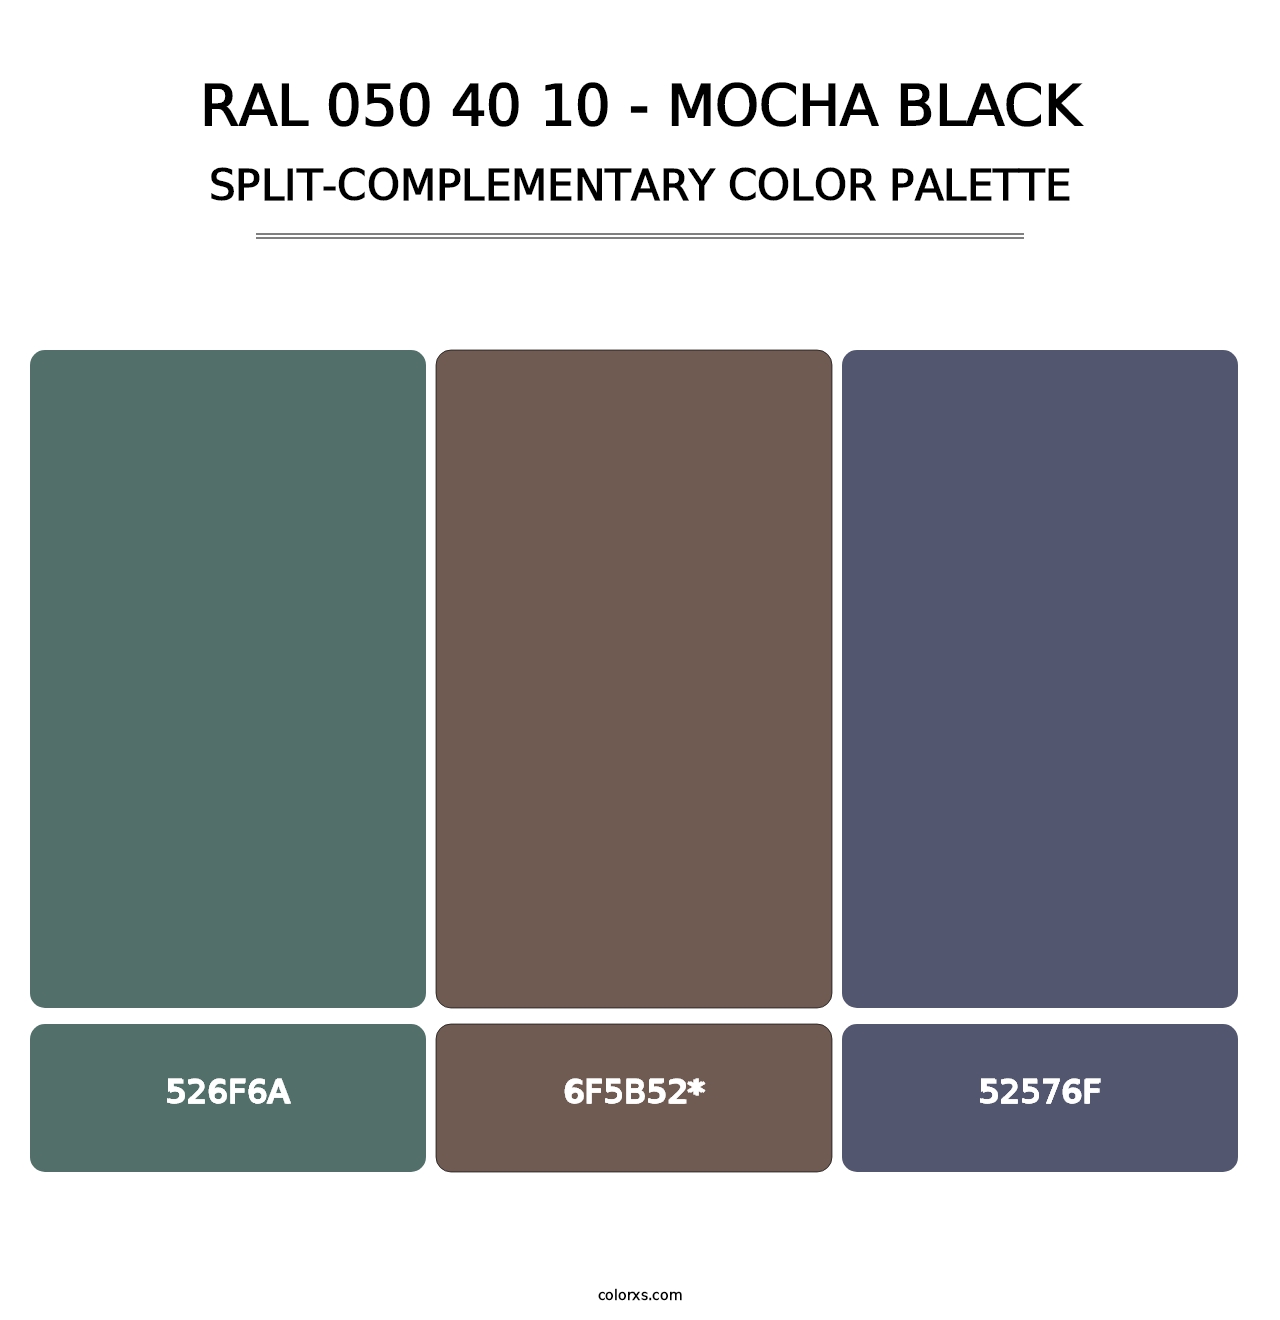 RAL 050 40 10 - Mocha Black - Split-Complementary Color Palette